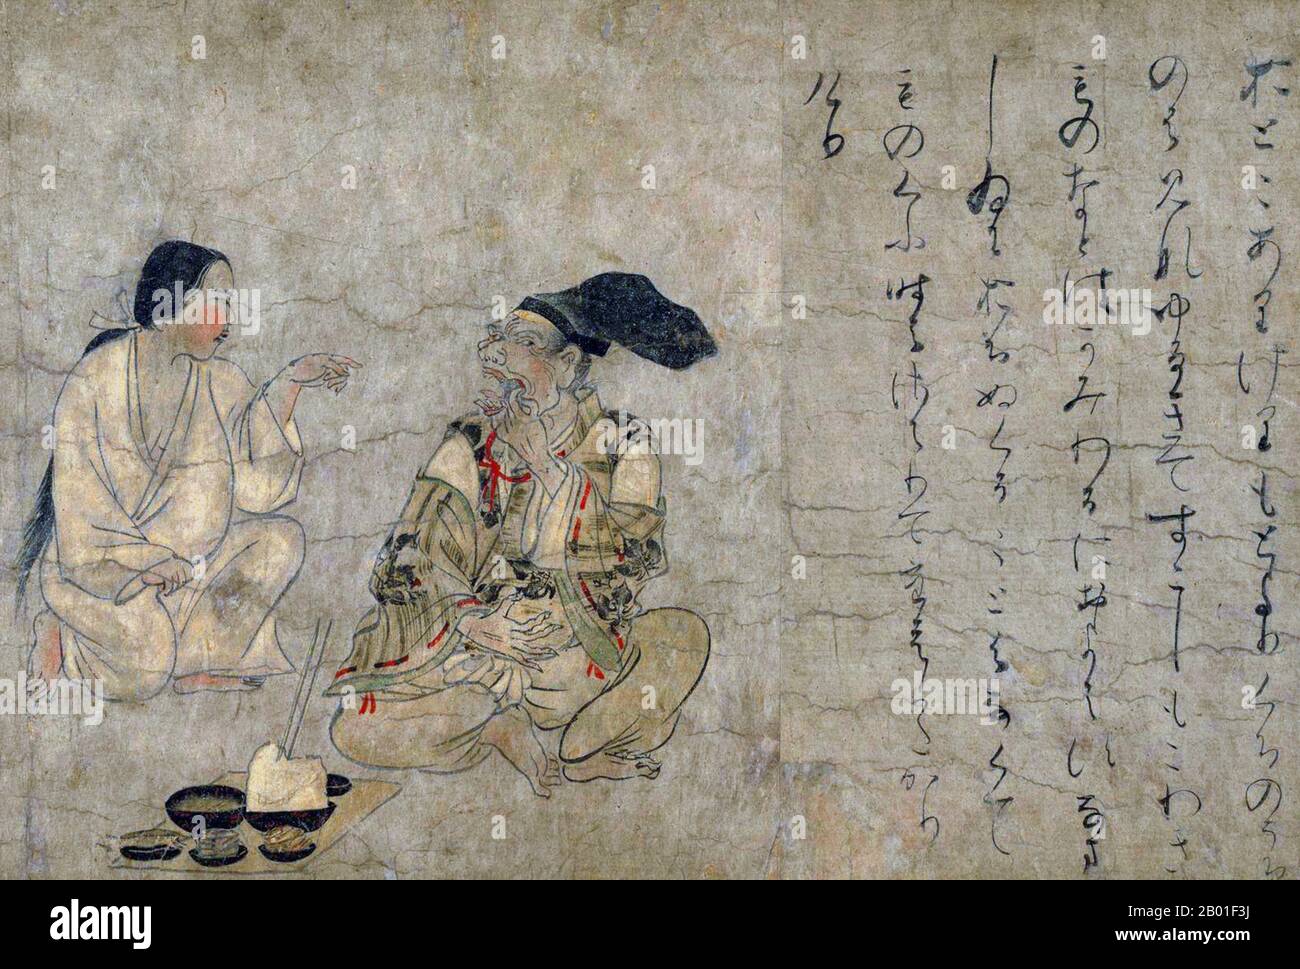 Japan: Ein Mann mit Zahnproblemen. Handscrollen-Gemälde aus dem Yamai no Soshi (Yamai Zoshi) oder „Diseases Scroll“, Mitte des 12. Jahrhunderts CE. Die Shihon Choshoku Yamai no soshi („Krankheiten und Missbildungen“, 紙本著色病草紙) ist eine Handschrift (Emakimono) aus dem späten Heian (12. Jahrhundert), die aus Farbgemälden auf Papier besteht, das zu gegebener Zeit in zehn separate Abschnitte geschnitten wurde. Sie sind im Kyoto National Museum erhalten und als nationales Juwel Japans gelistet. Stockfoto